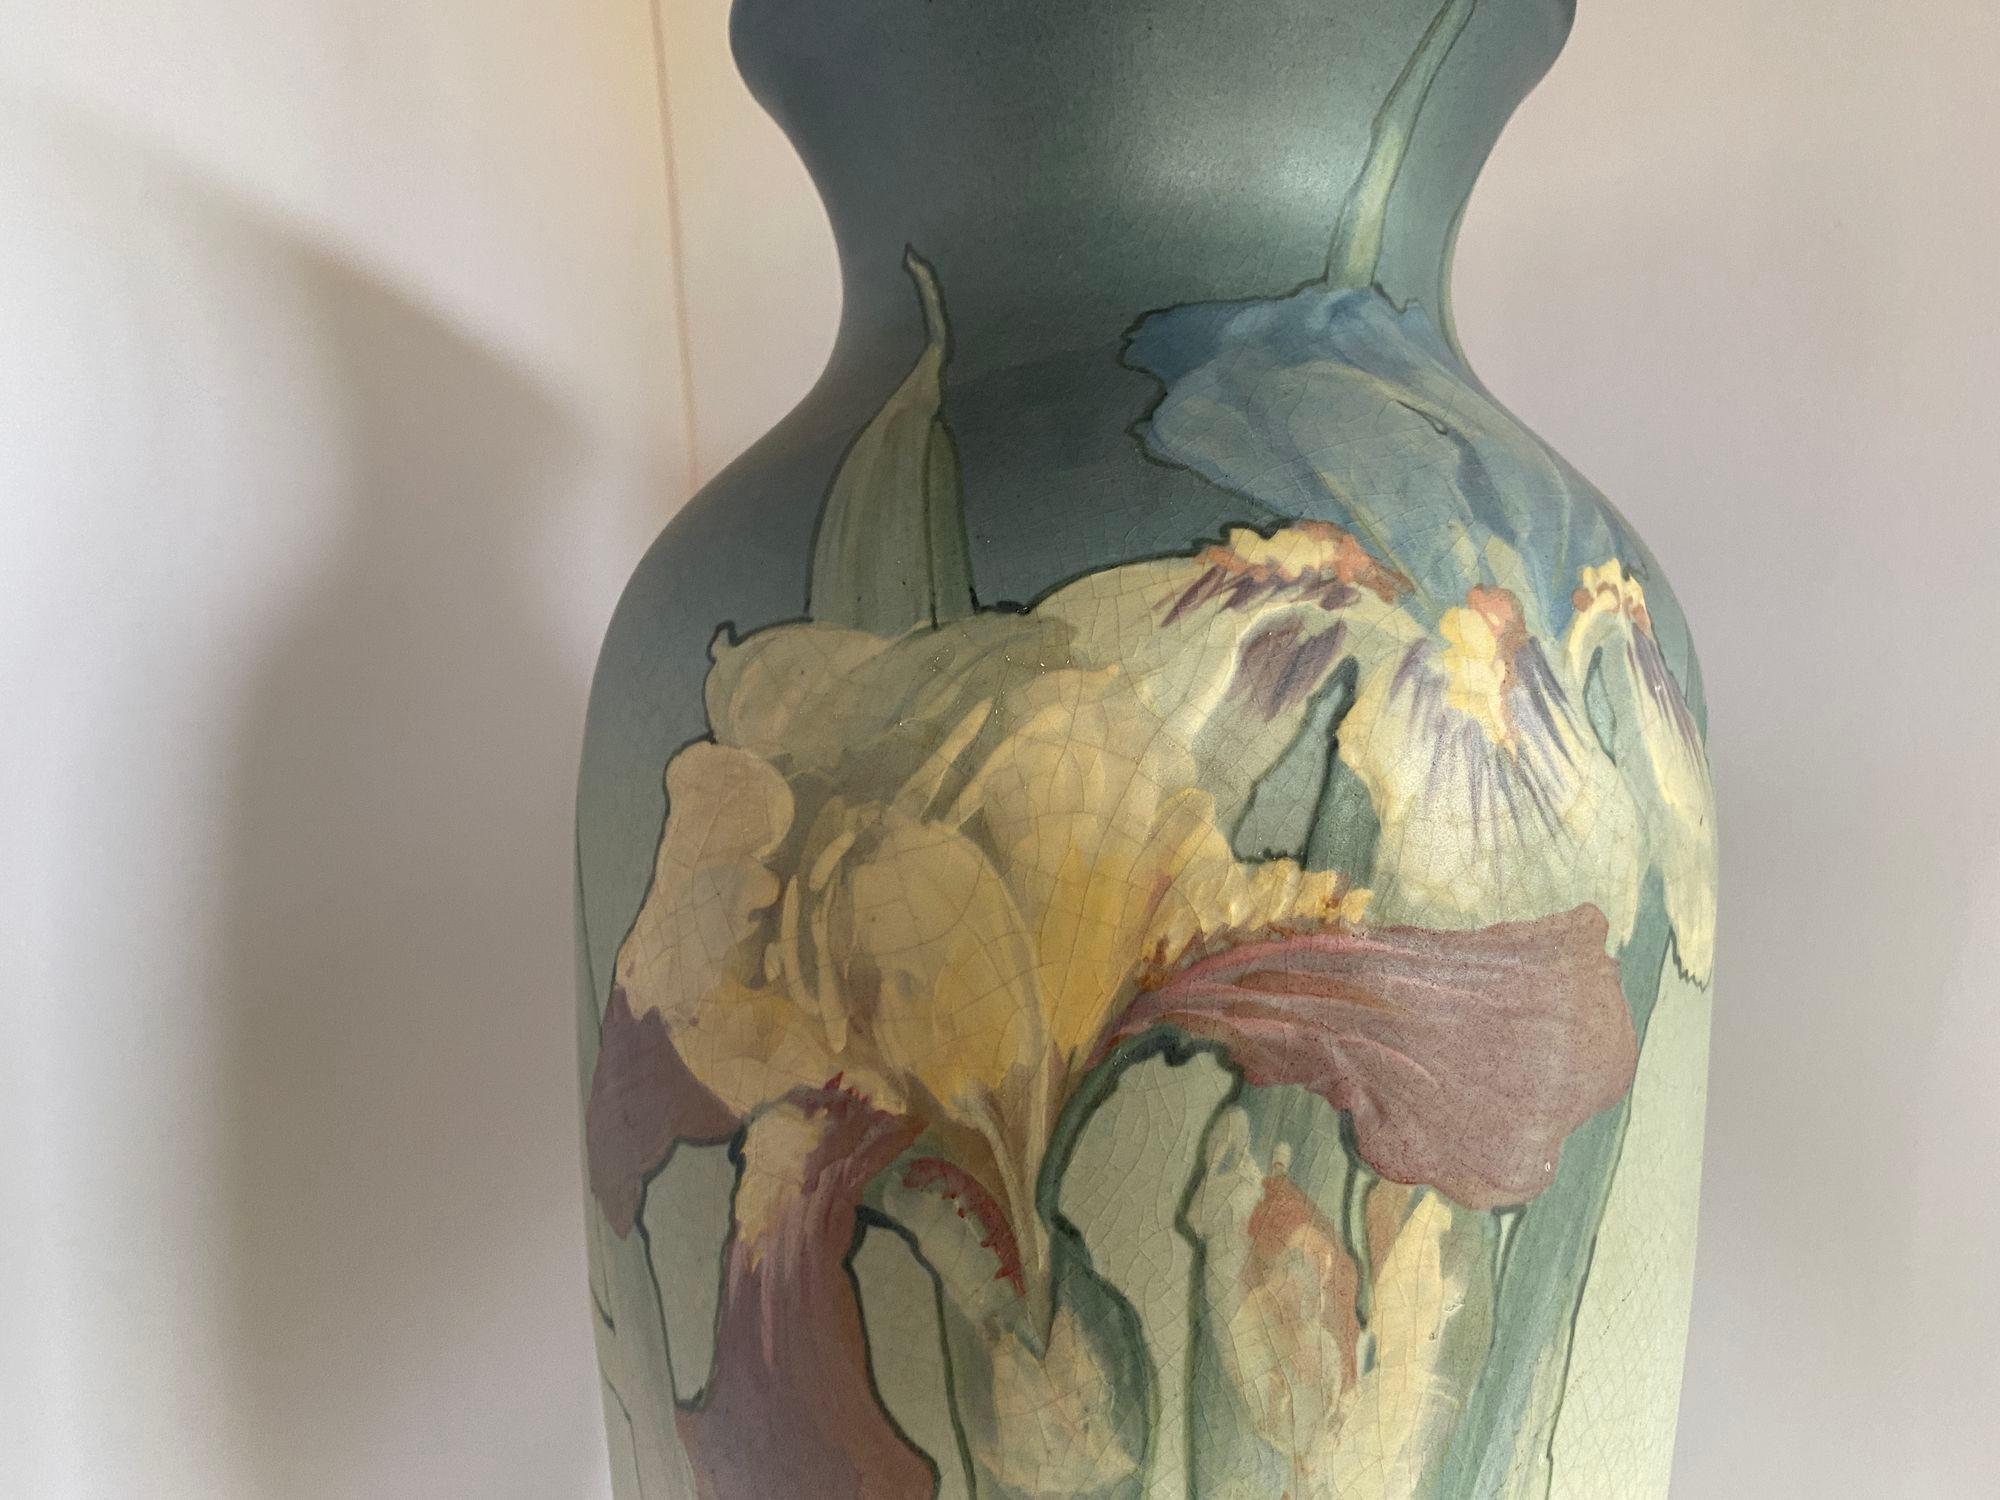 Vase ancien en poterie d'art Arts & Crafts de Weller Pottery présentant un motif floral rose et blanc sur un fond dégradé allant du vert mousse de mer au bleu, signé par l'artiste et le fabricant comme sur la photo, vers 1920.

Mesures : 16